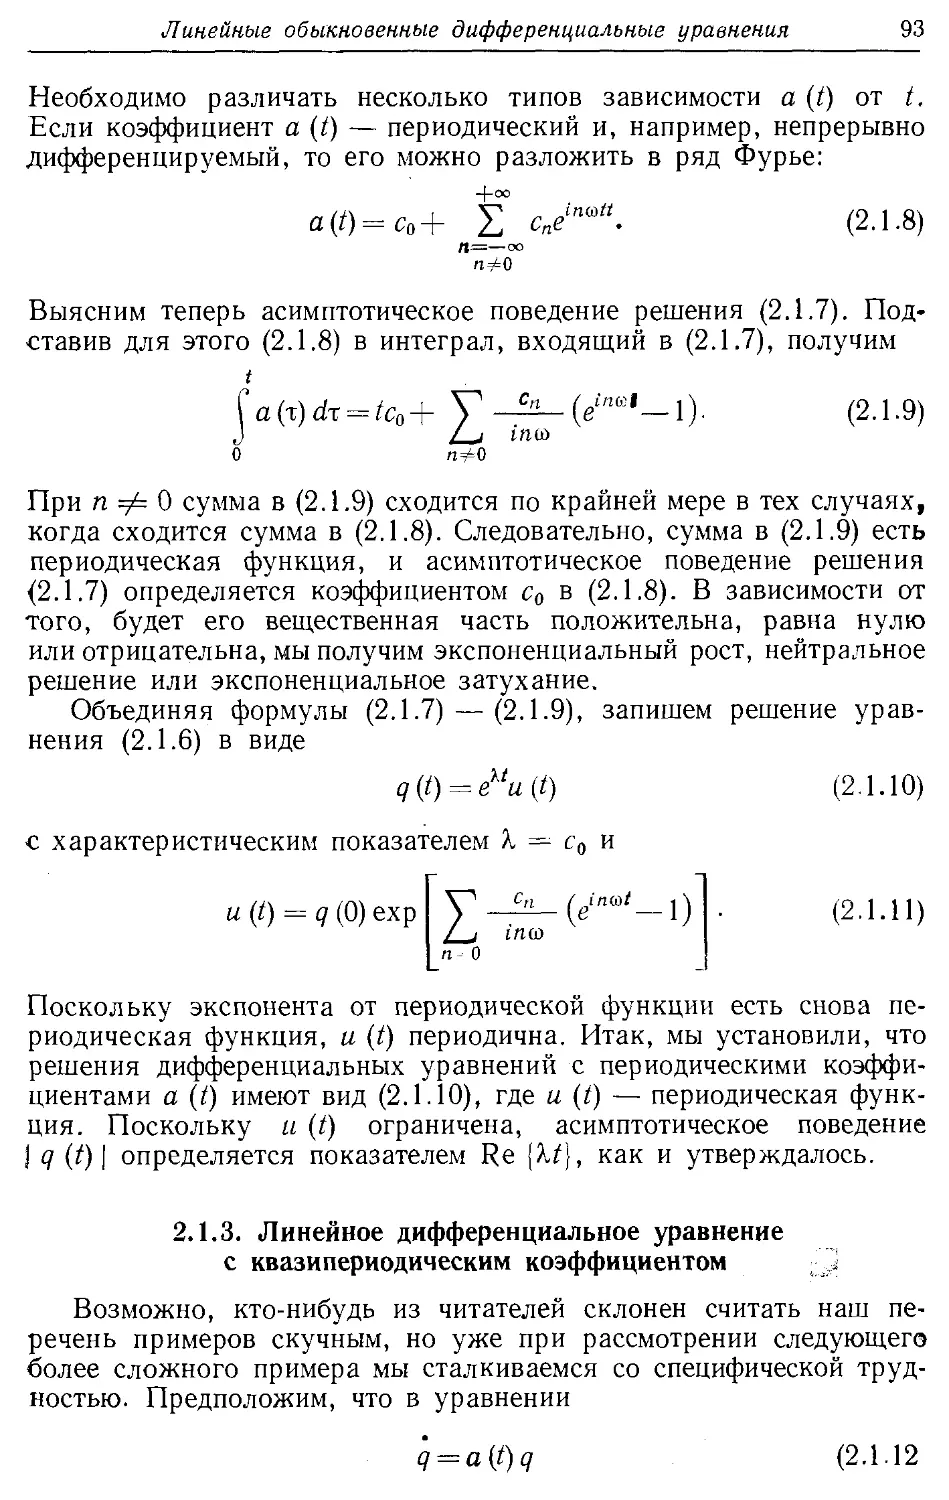 2.1.3. Линейное дифференциальное уравнение с квазипериодическим коэффициентом